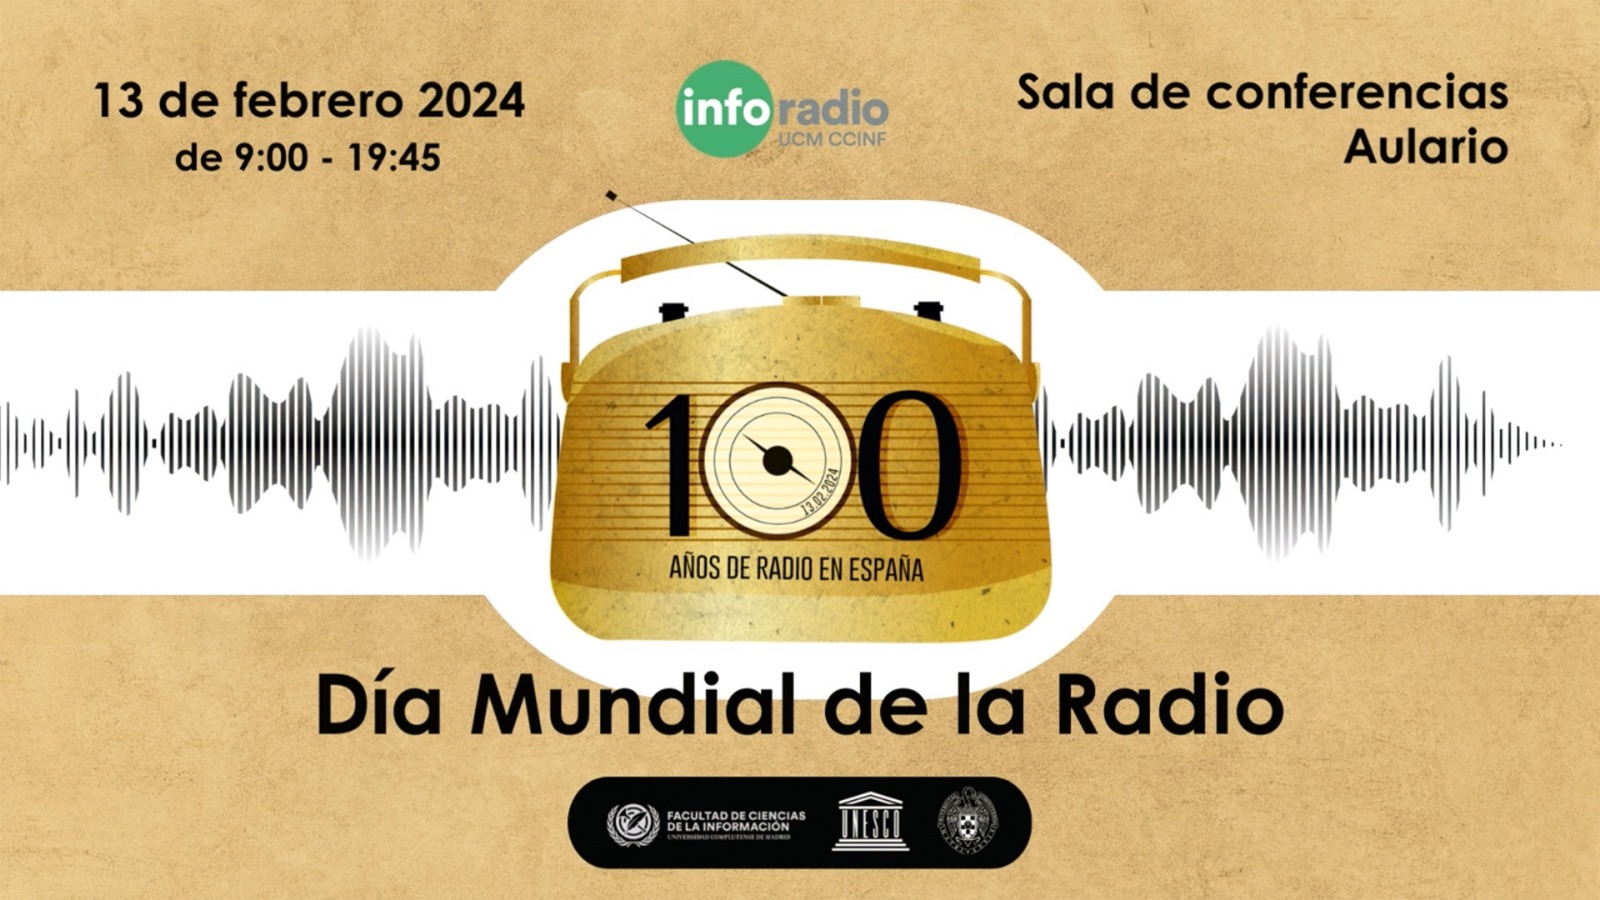 Inforadio celebra el centenario de la radio en España 